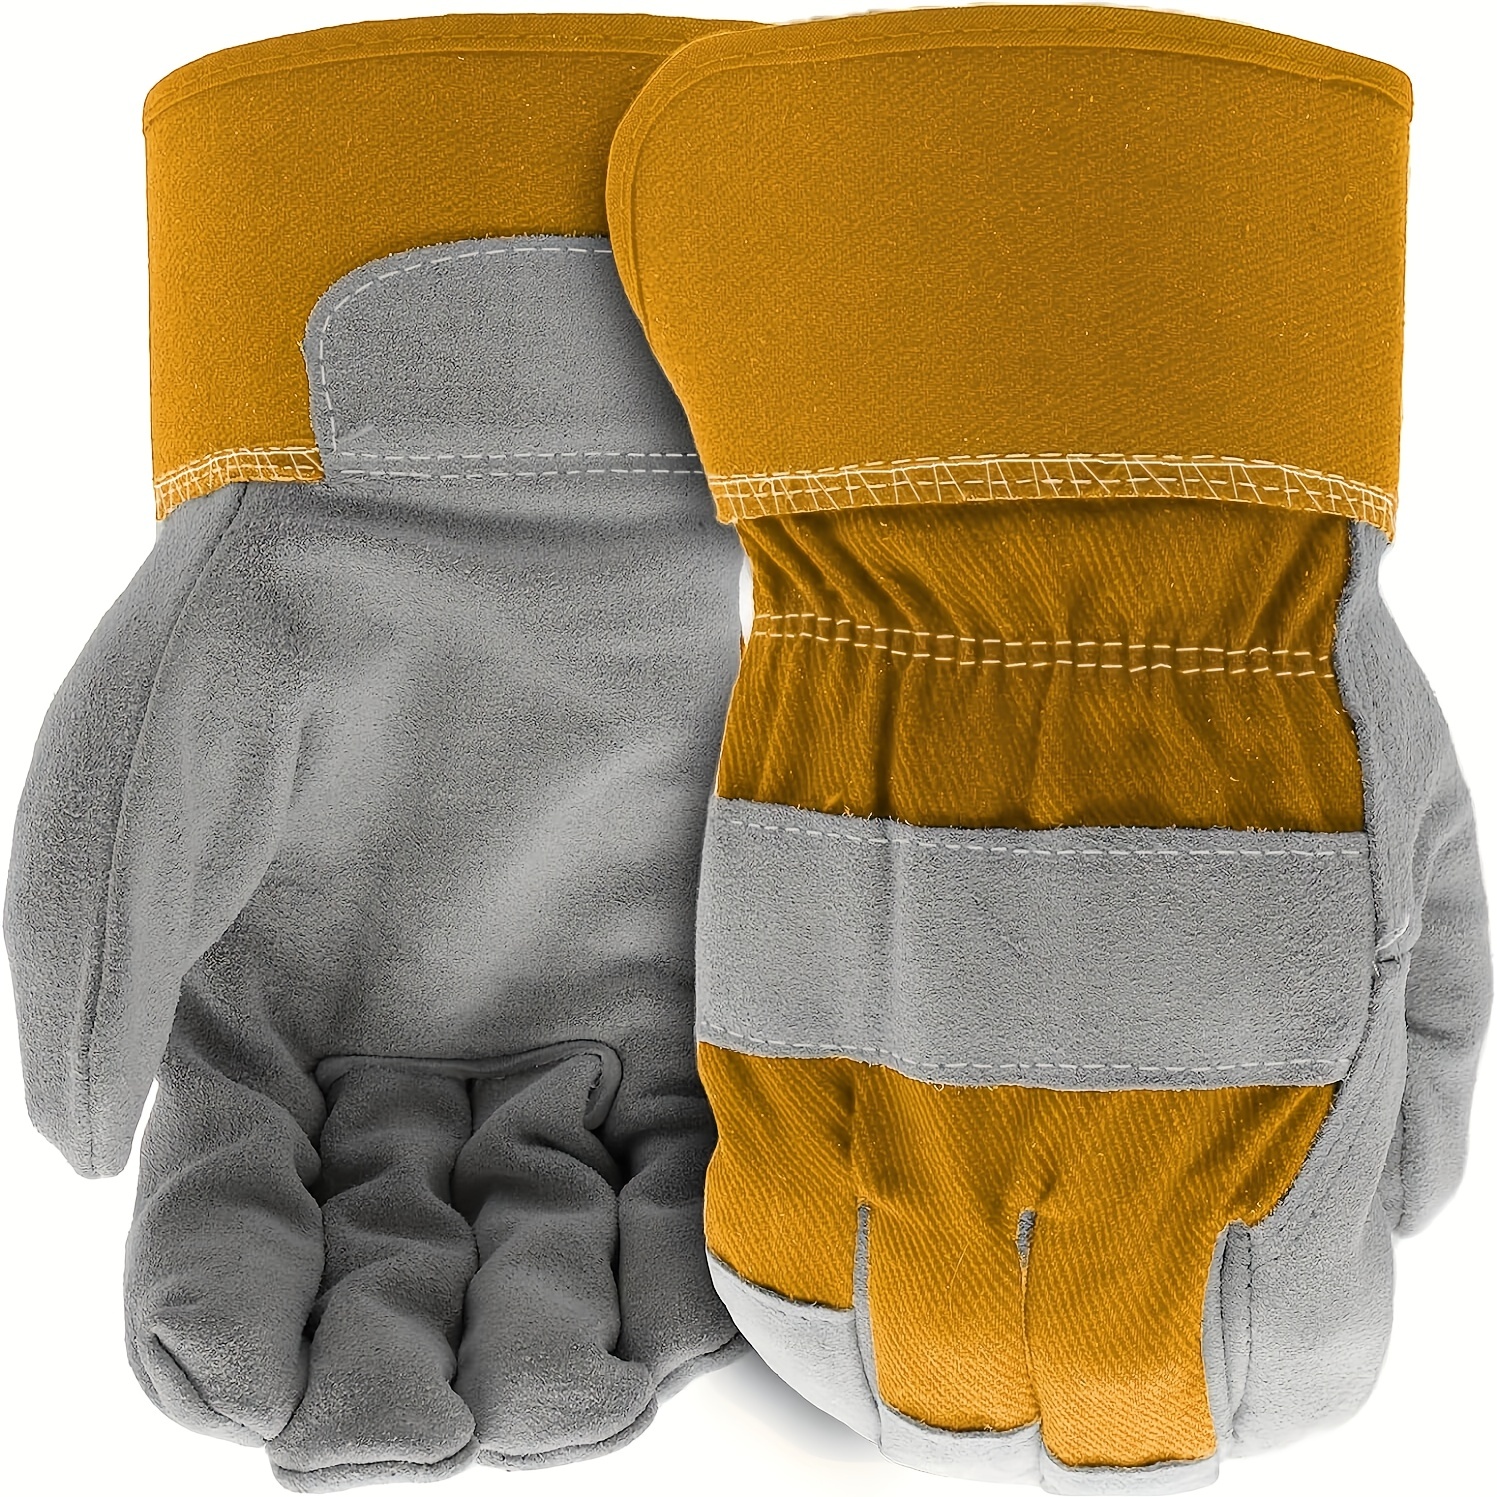 Gants de protection contre la poussière, cuir / coton, 1 paire